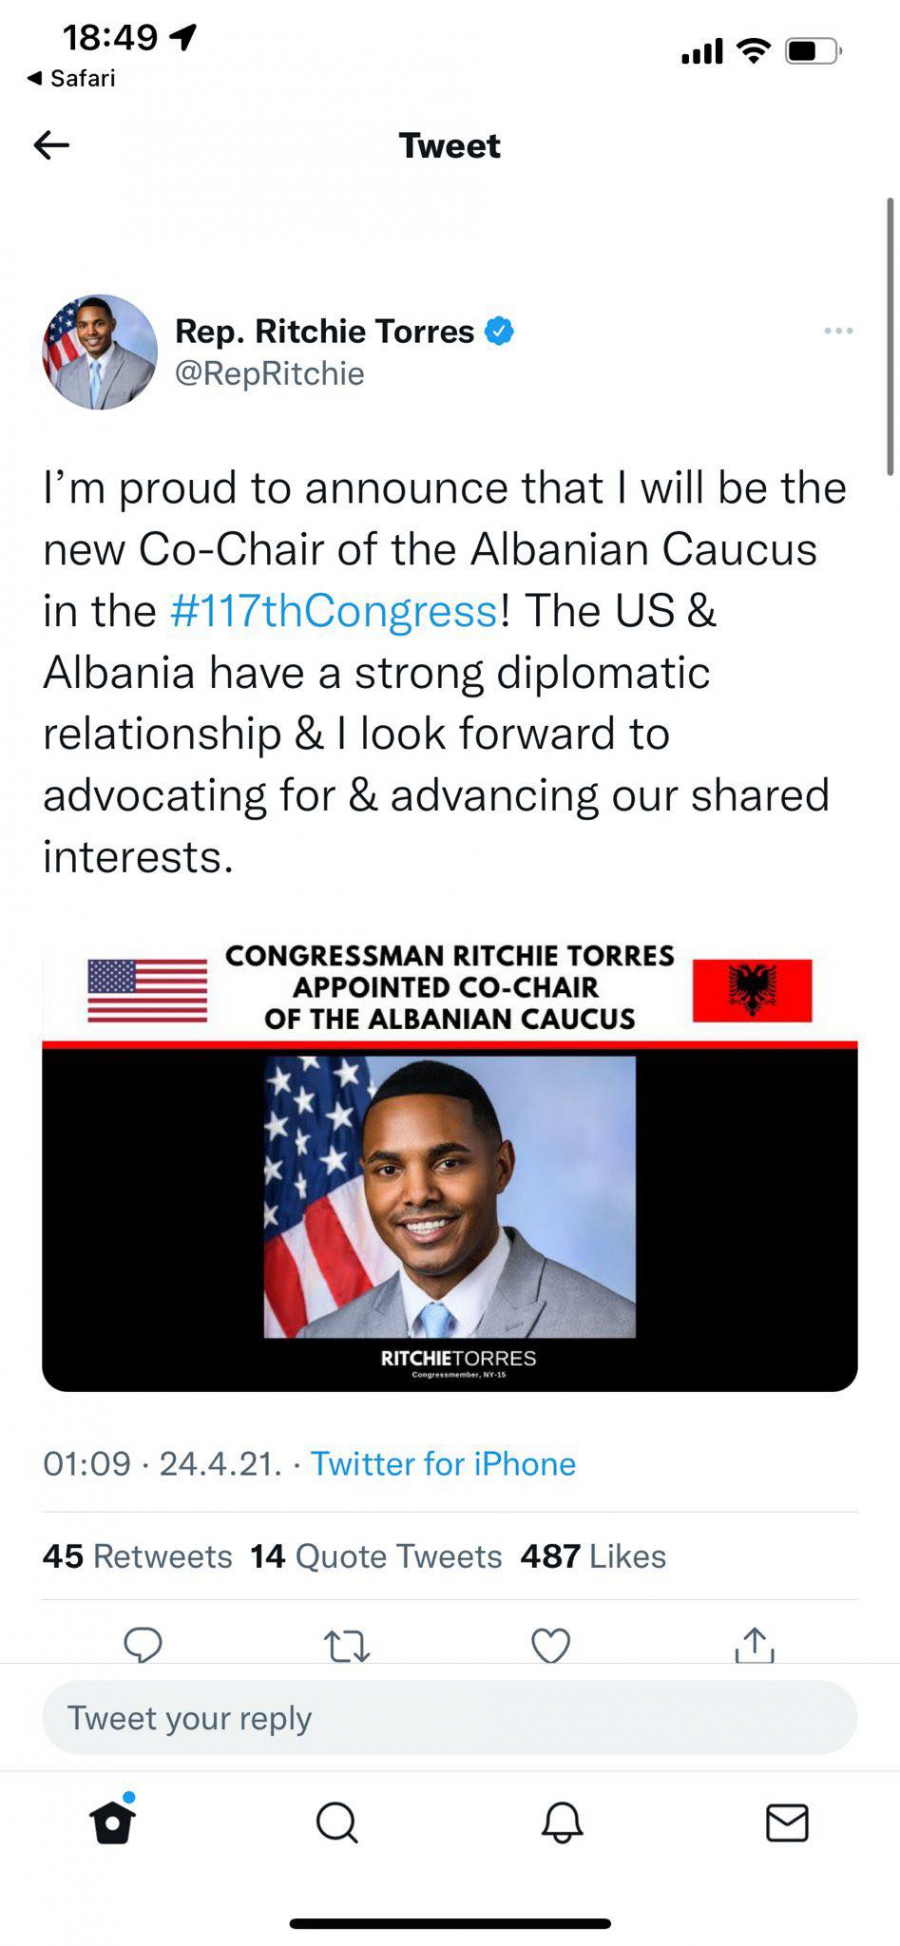 OPOZICIJA SARAĐUJE SA ALBANSKIM LOBISTOM Riči Tores: Zalagaću se za interese Albanije i SAD